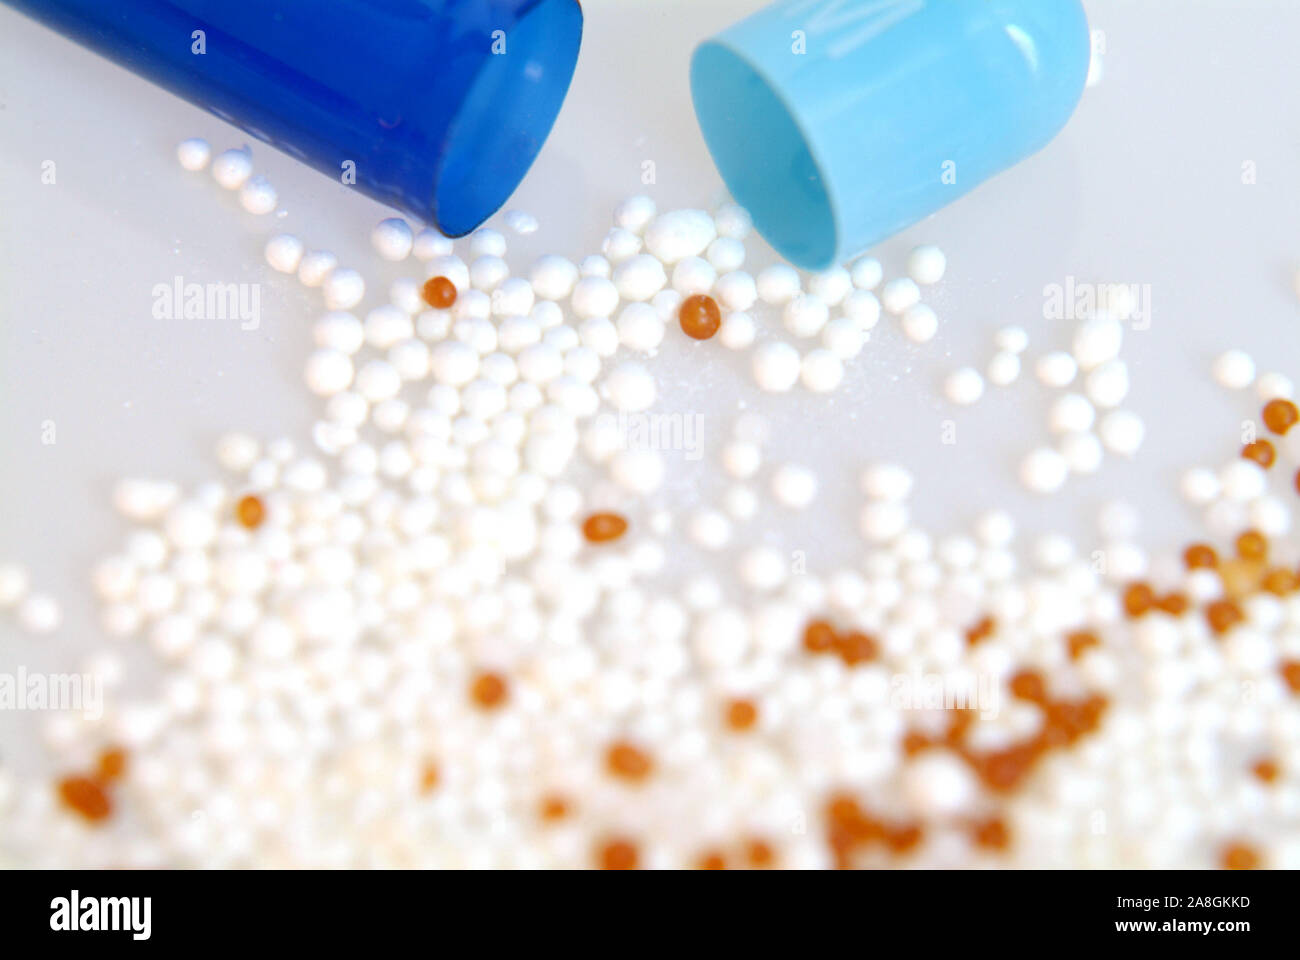 Arzneimittel, Kapsel, Pillen, placebo, Medizin, Tabletten, Foto de stock